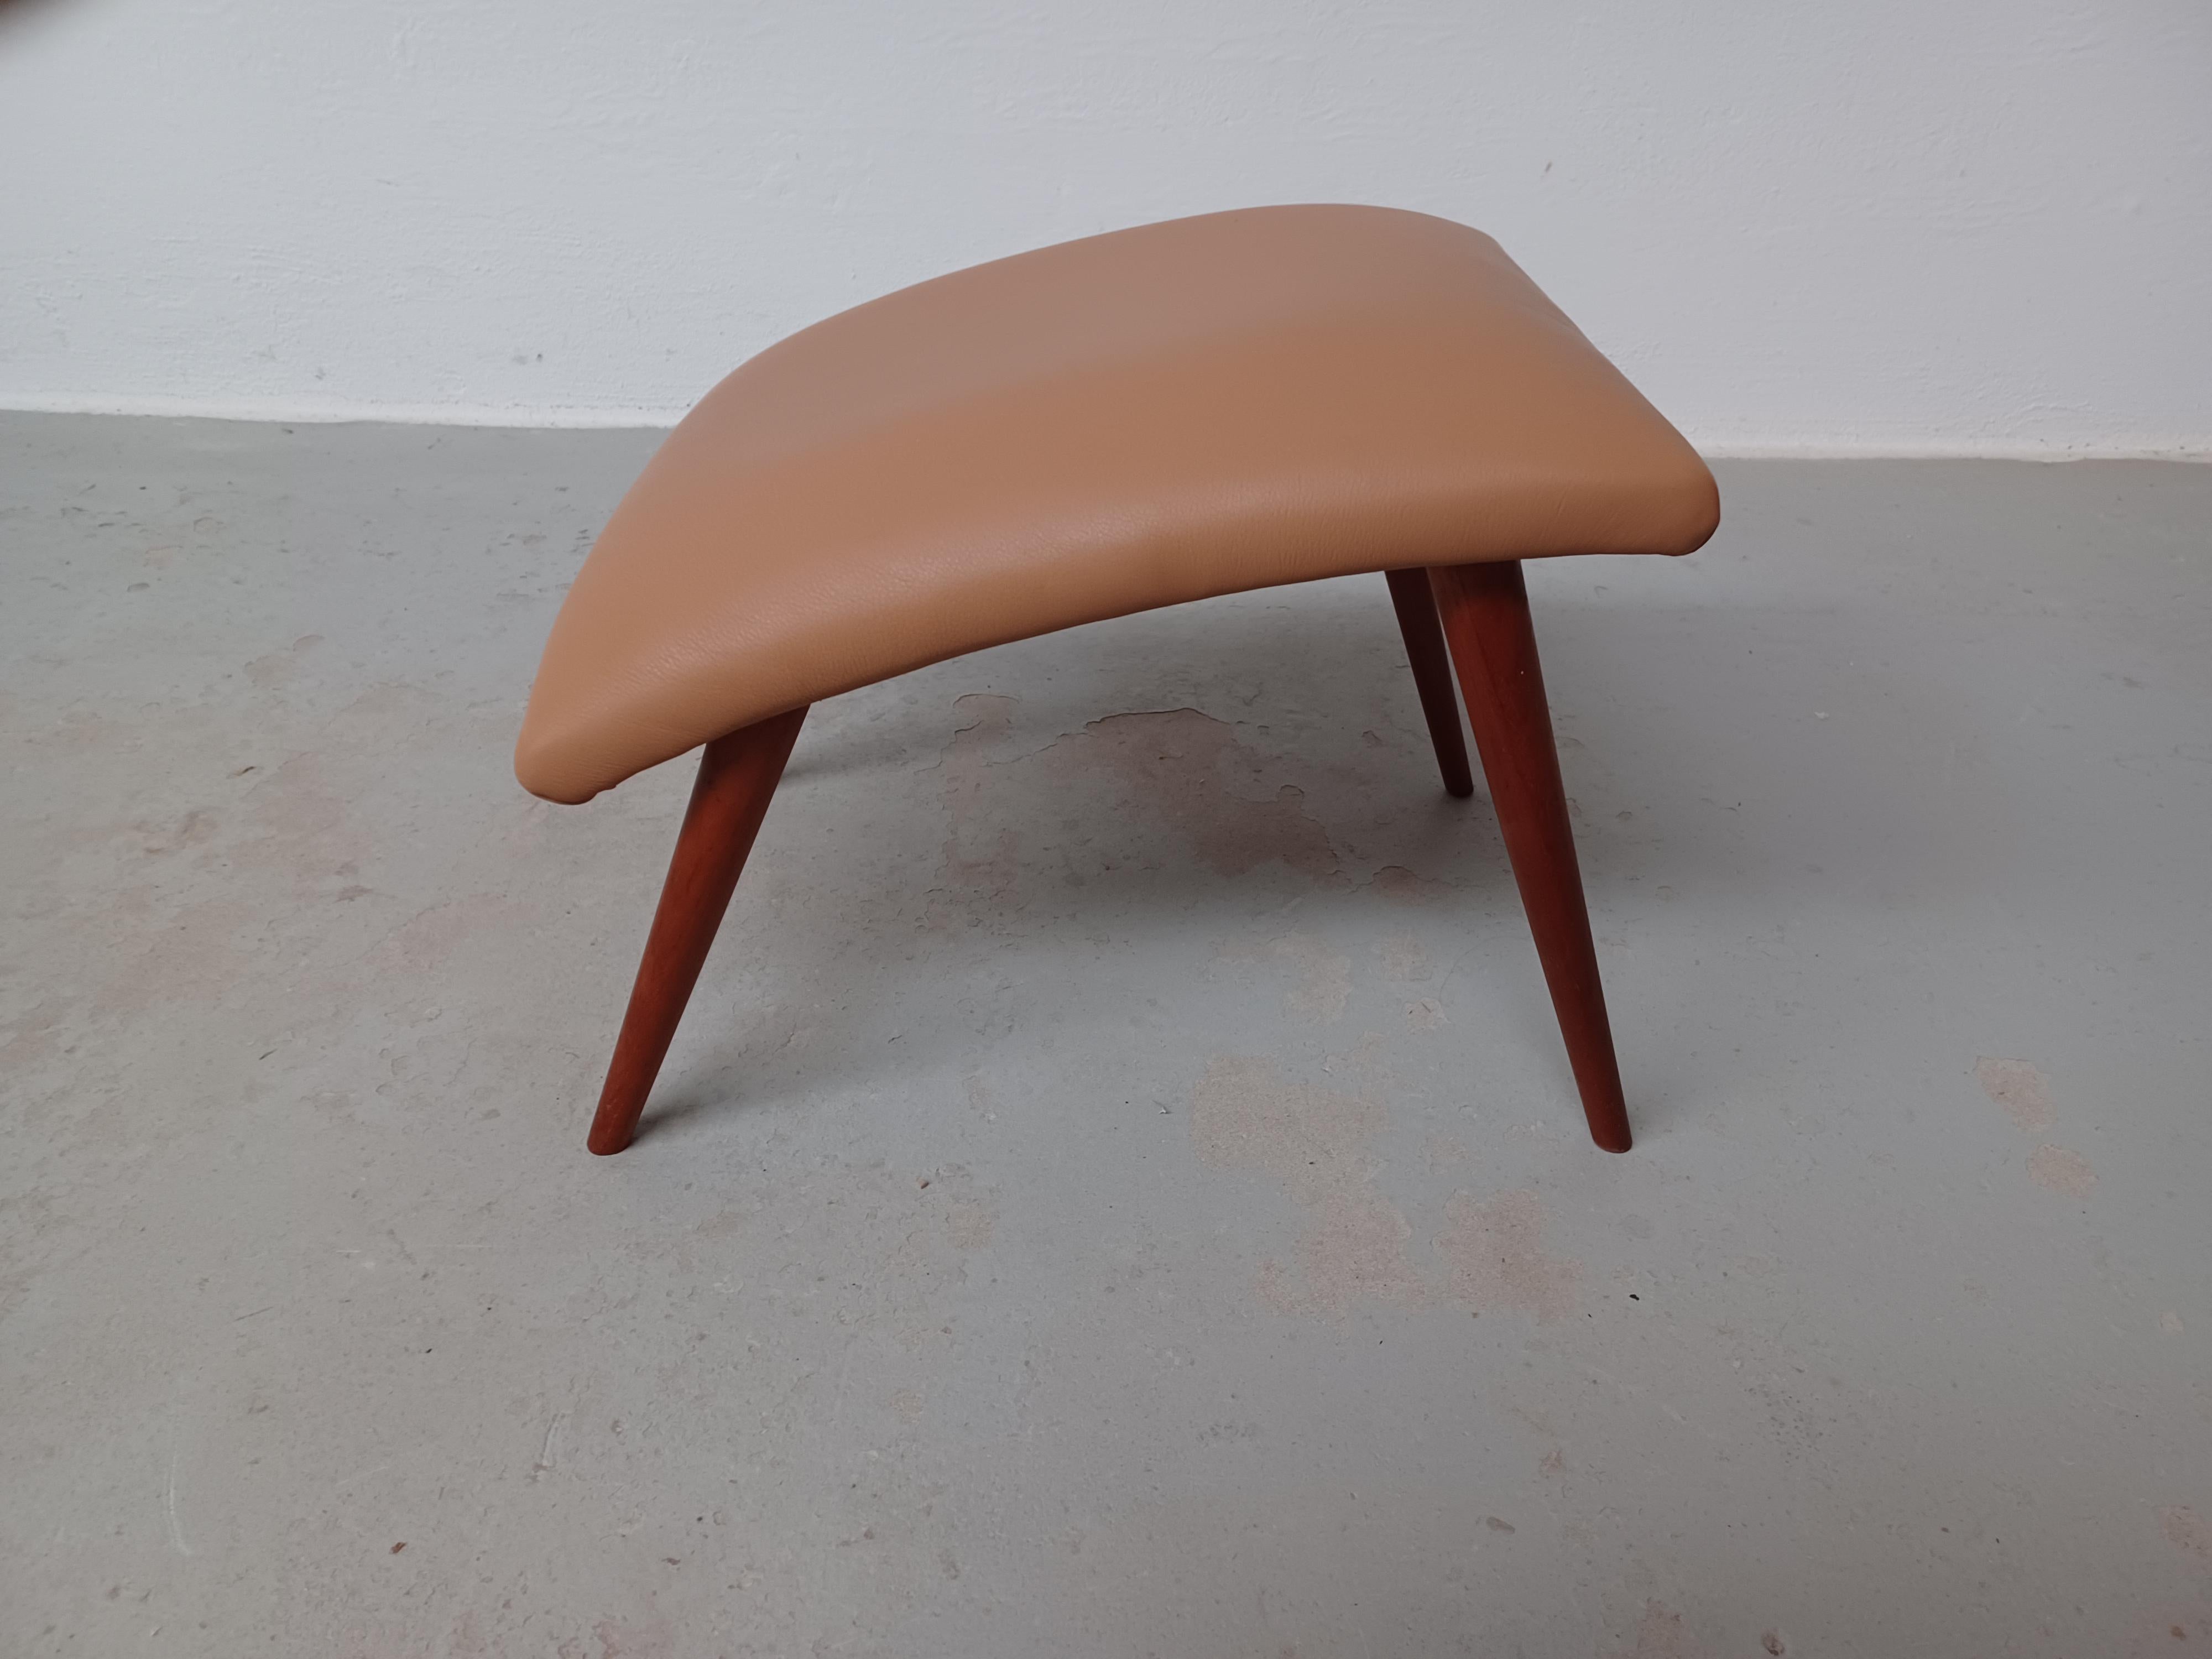 1960's Restauré et  Tabouret danois en cuir.

Tabouret danois au design moderne scandinave minimaliste mais avancé, avec ses lignes droites et simples combinées à une assise et des pieds aux courbes organiques.

Le pouf a été restauré et remis à